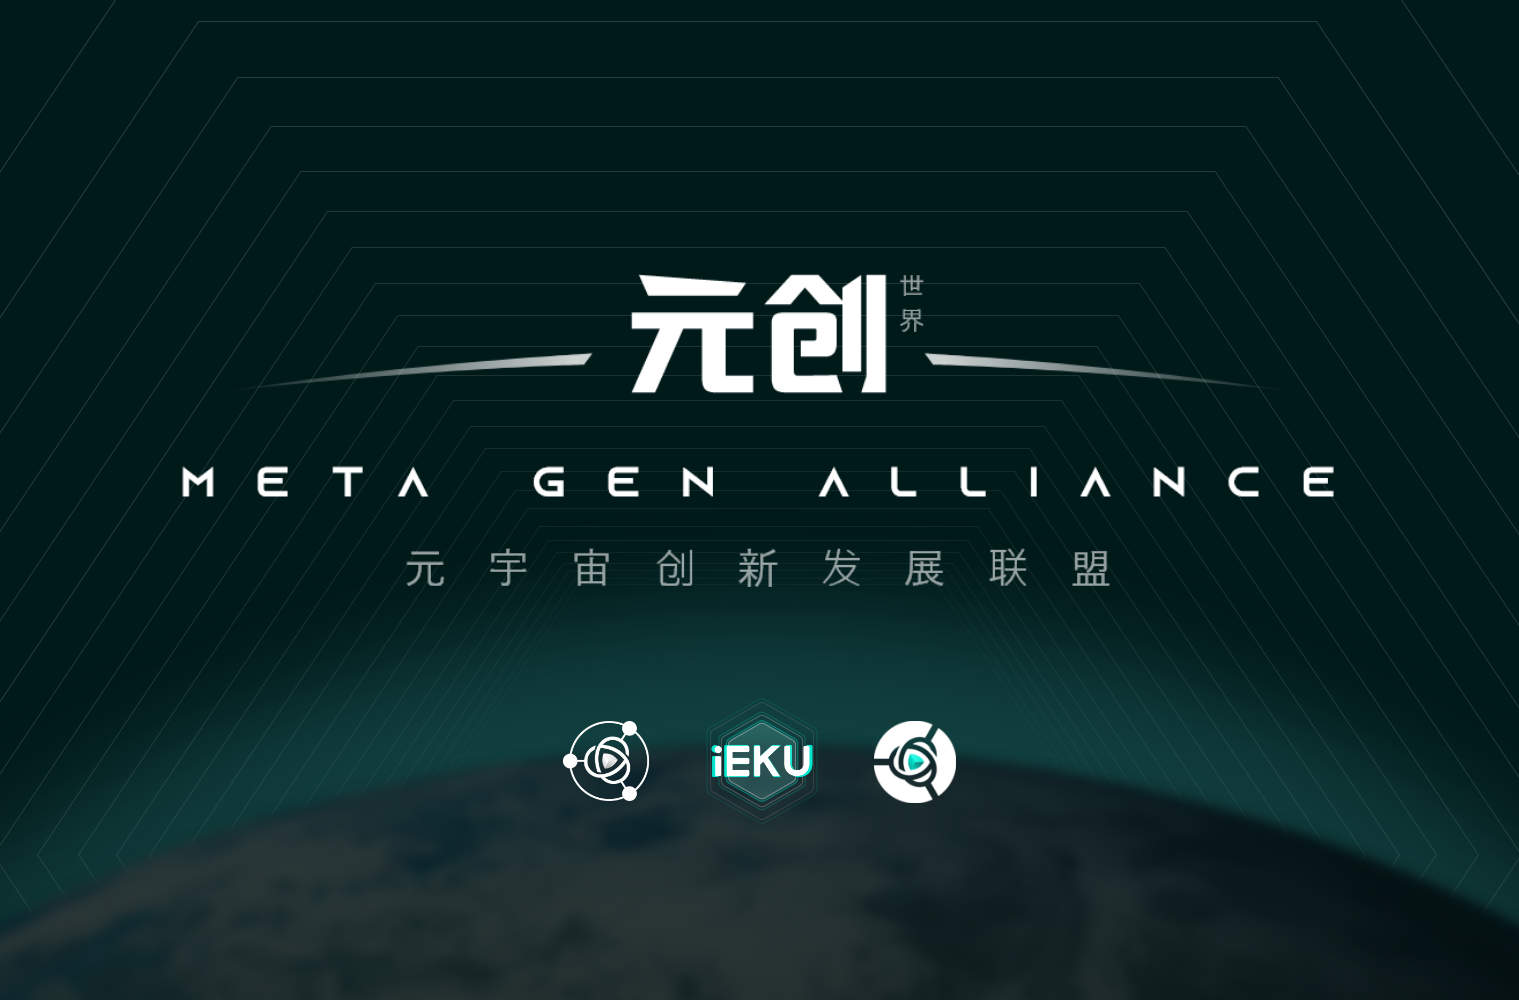 【动态】iEKU艺酷-元宇宙创新发展联盟成立，正式拉开数字市场的序幕